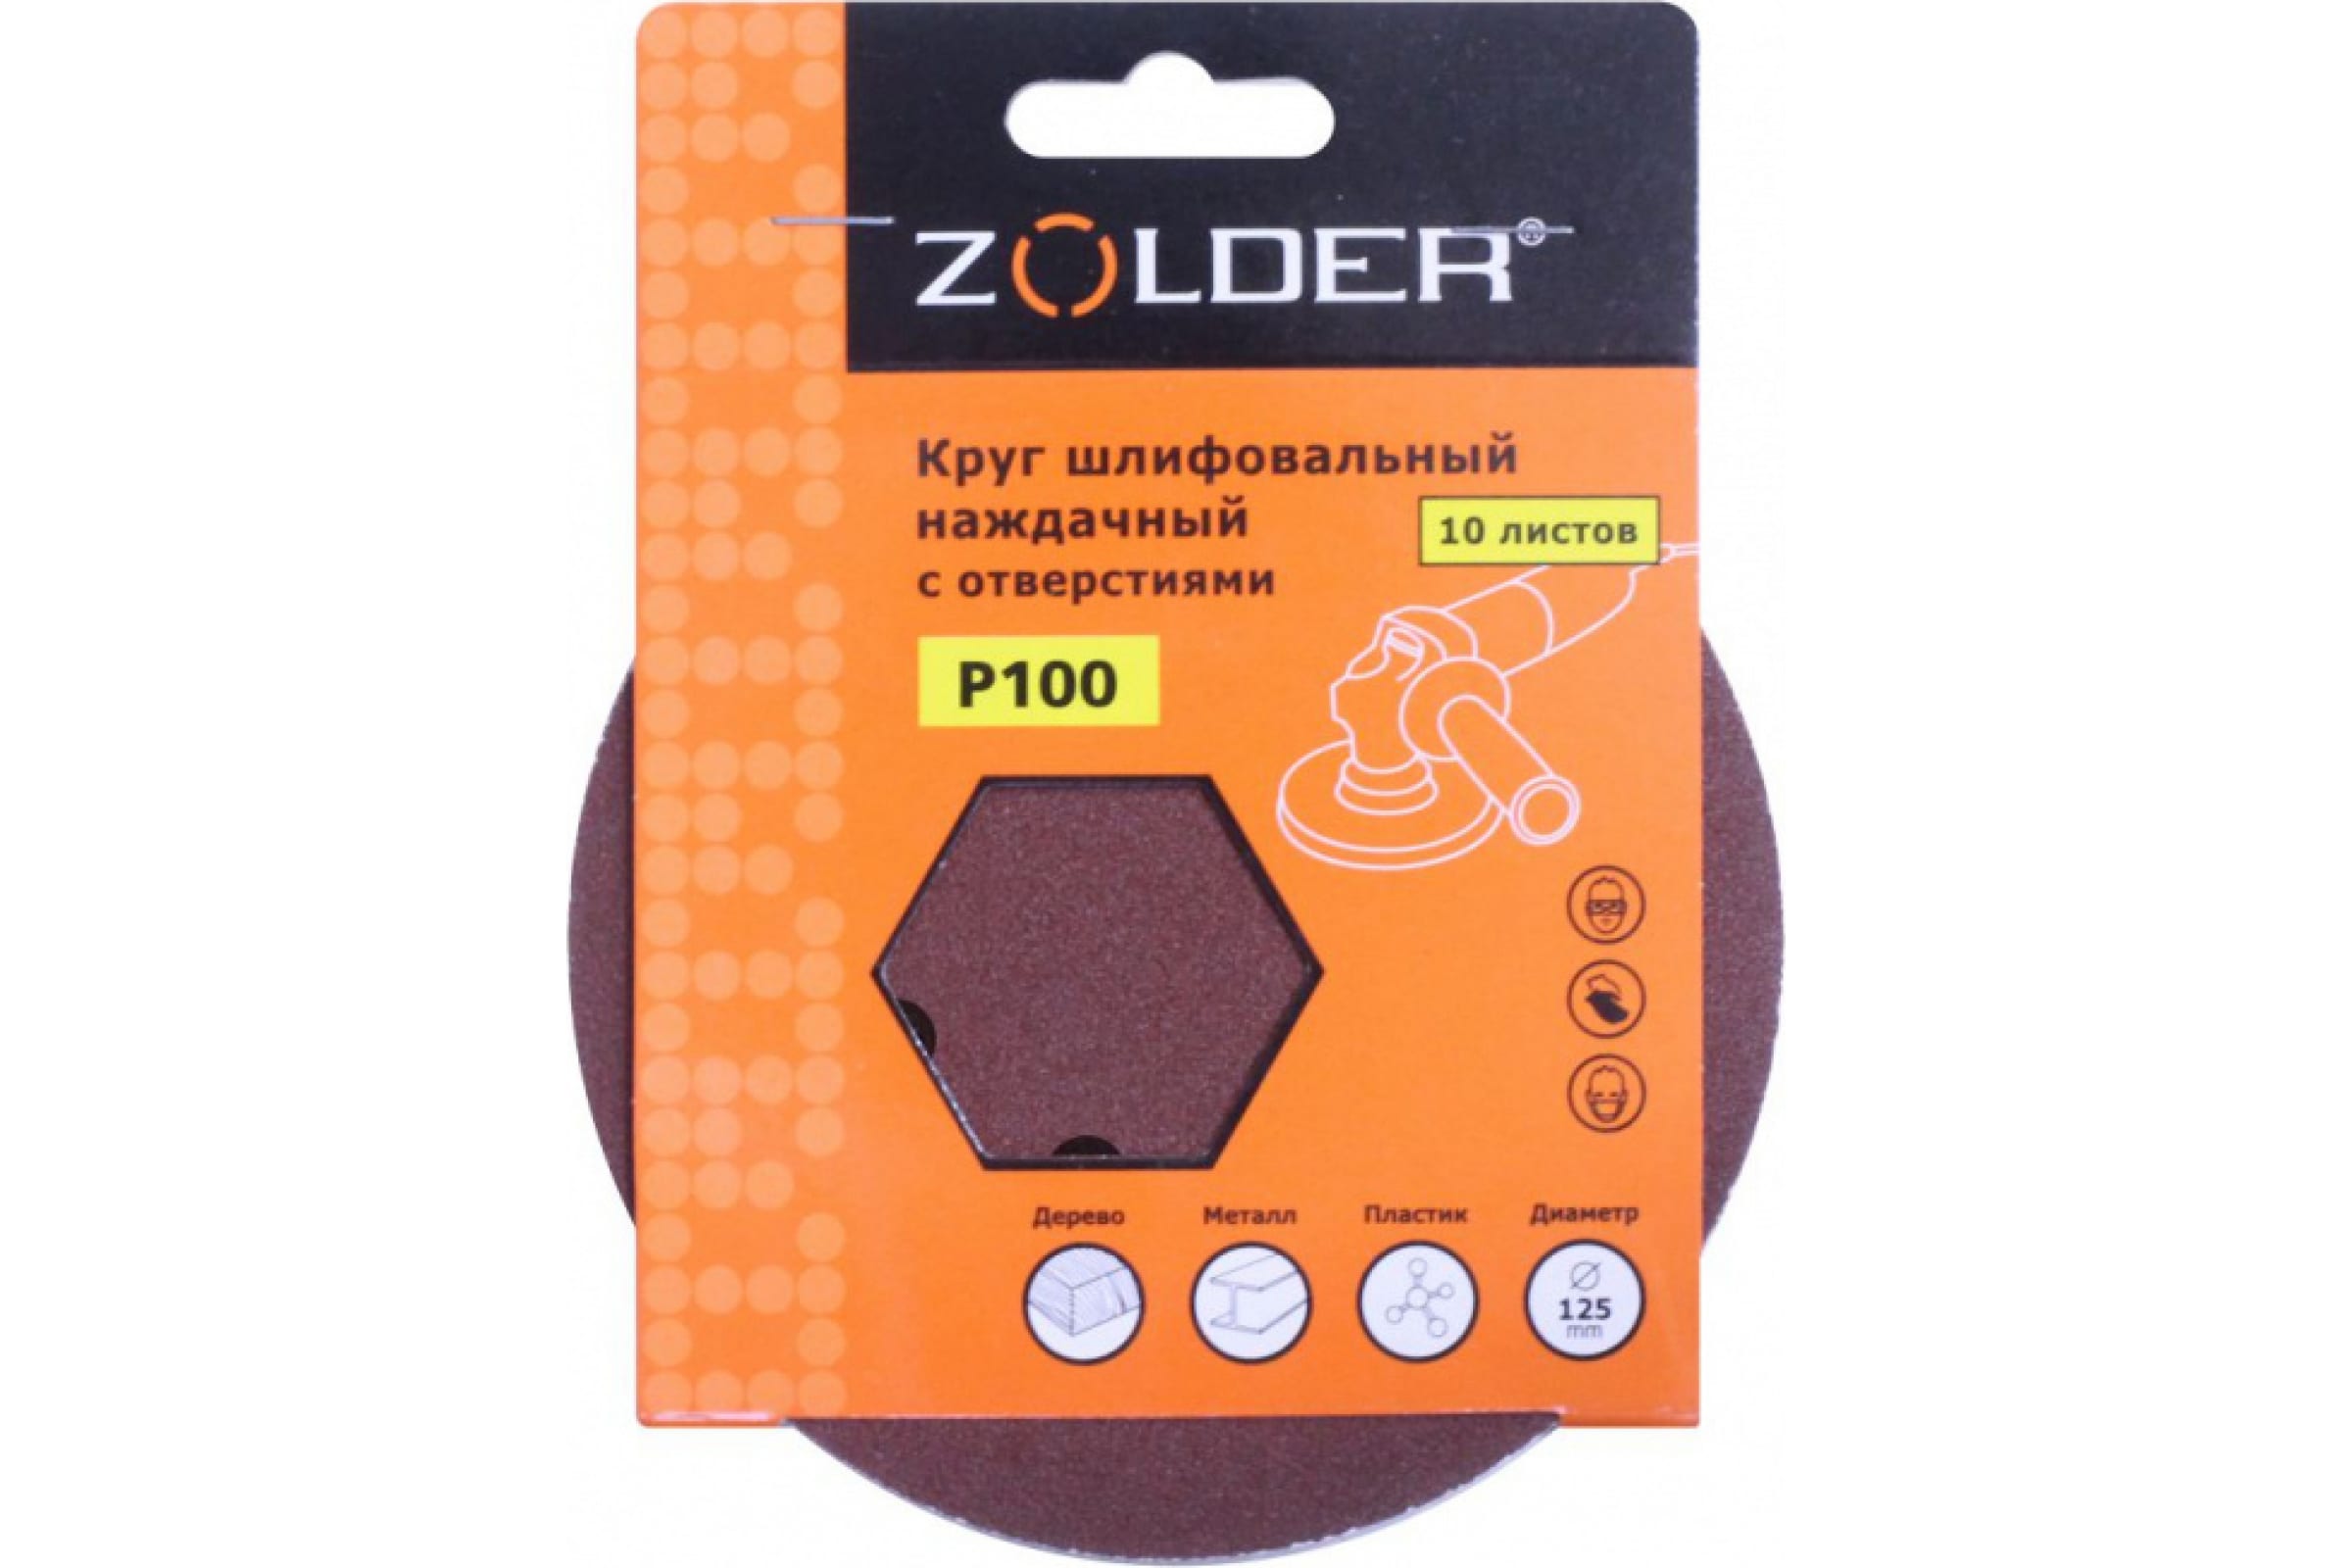 ZOLDER Круги шлифовальные наждачные 10шт/ P100, 125 мм, 8 отверстий, липучка / Z-108-1008 наждачные круги шлифовальные zolder